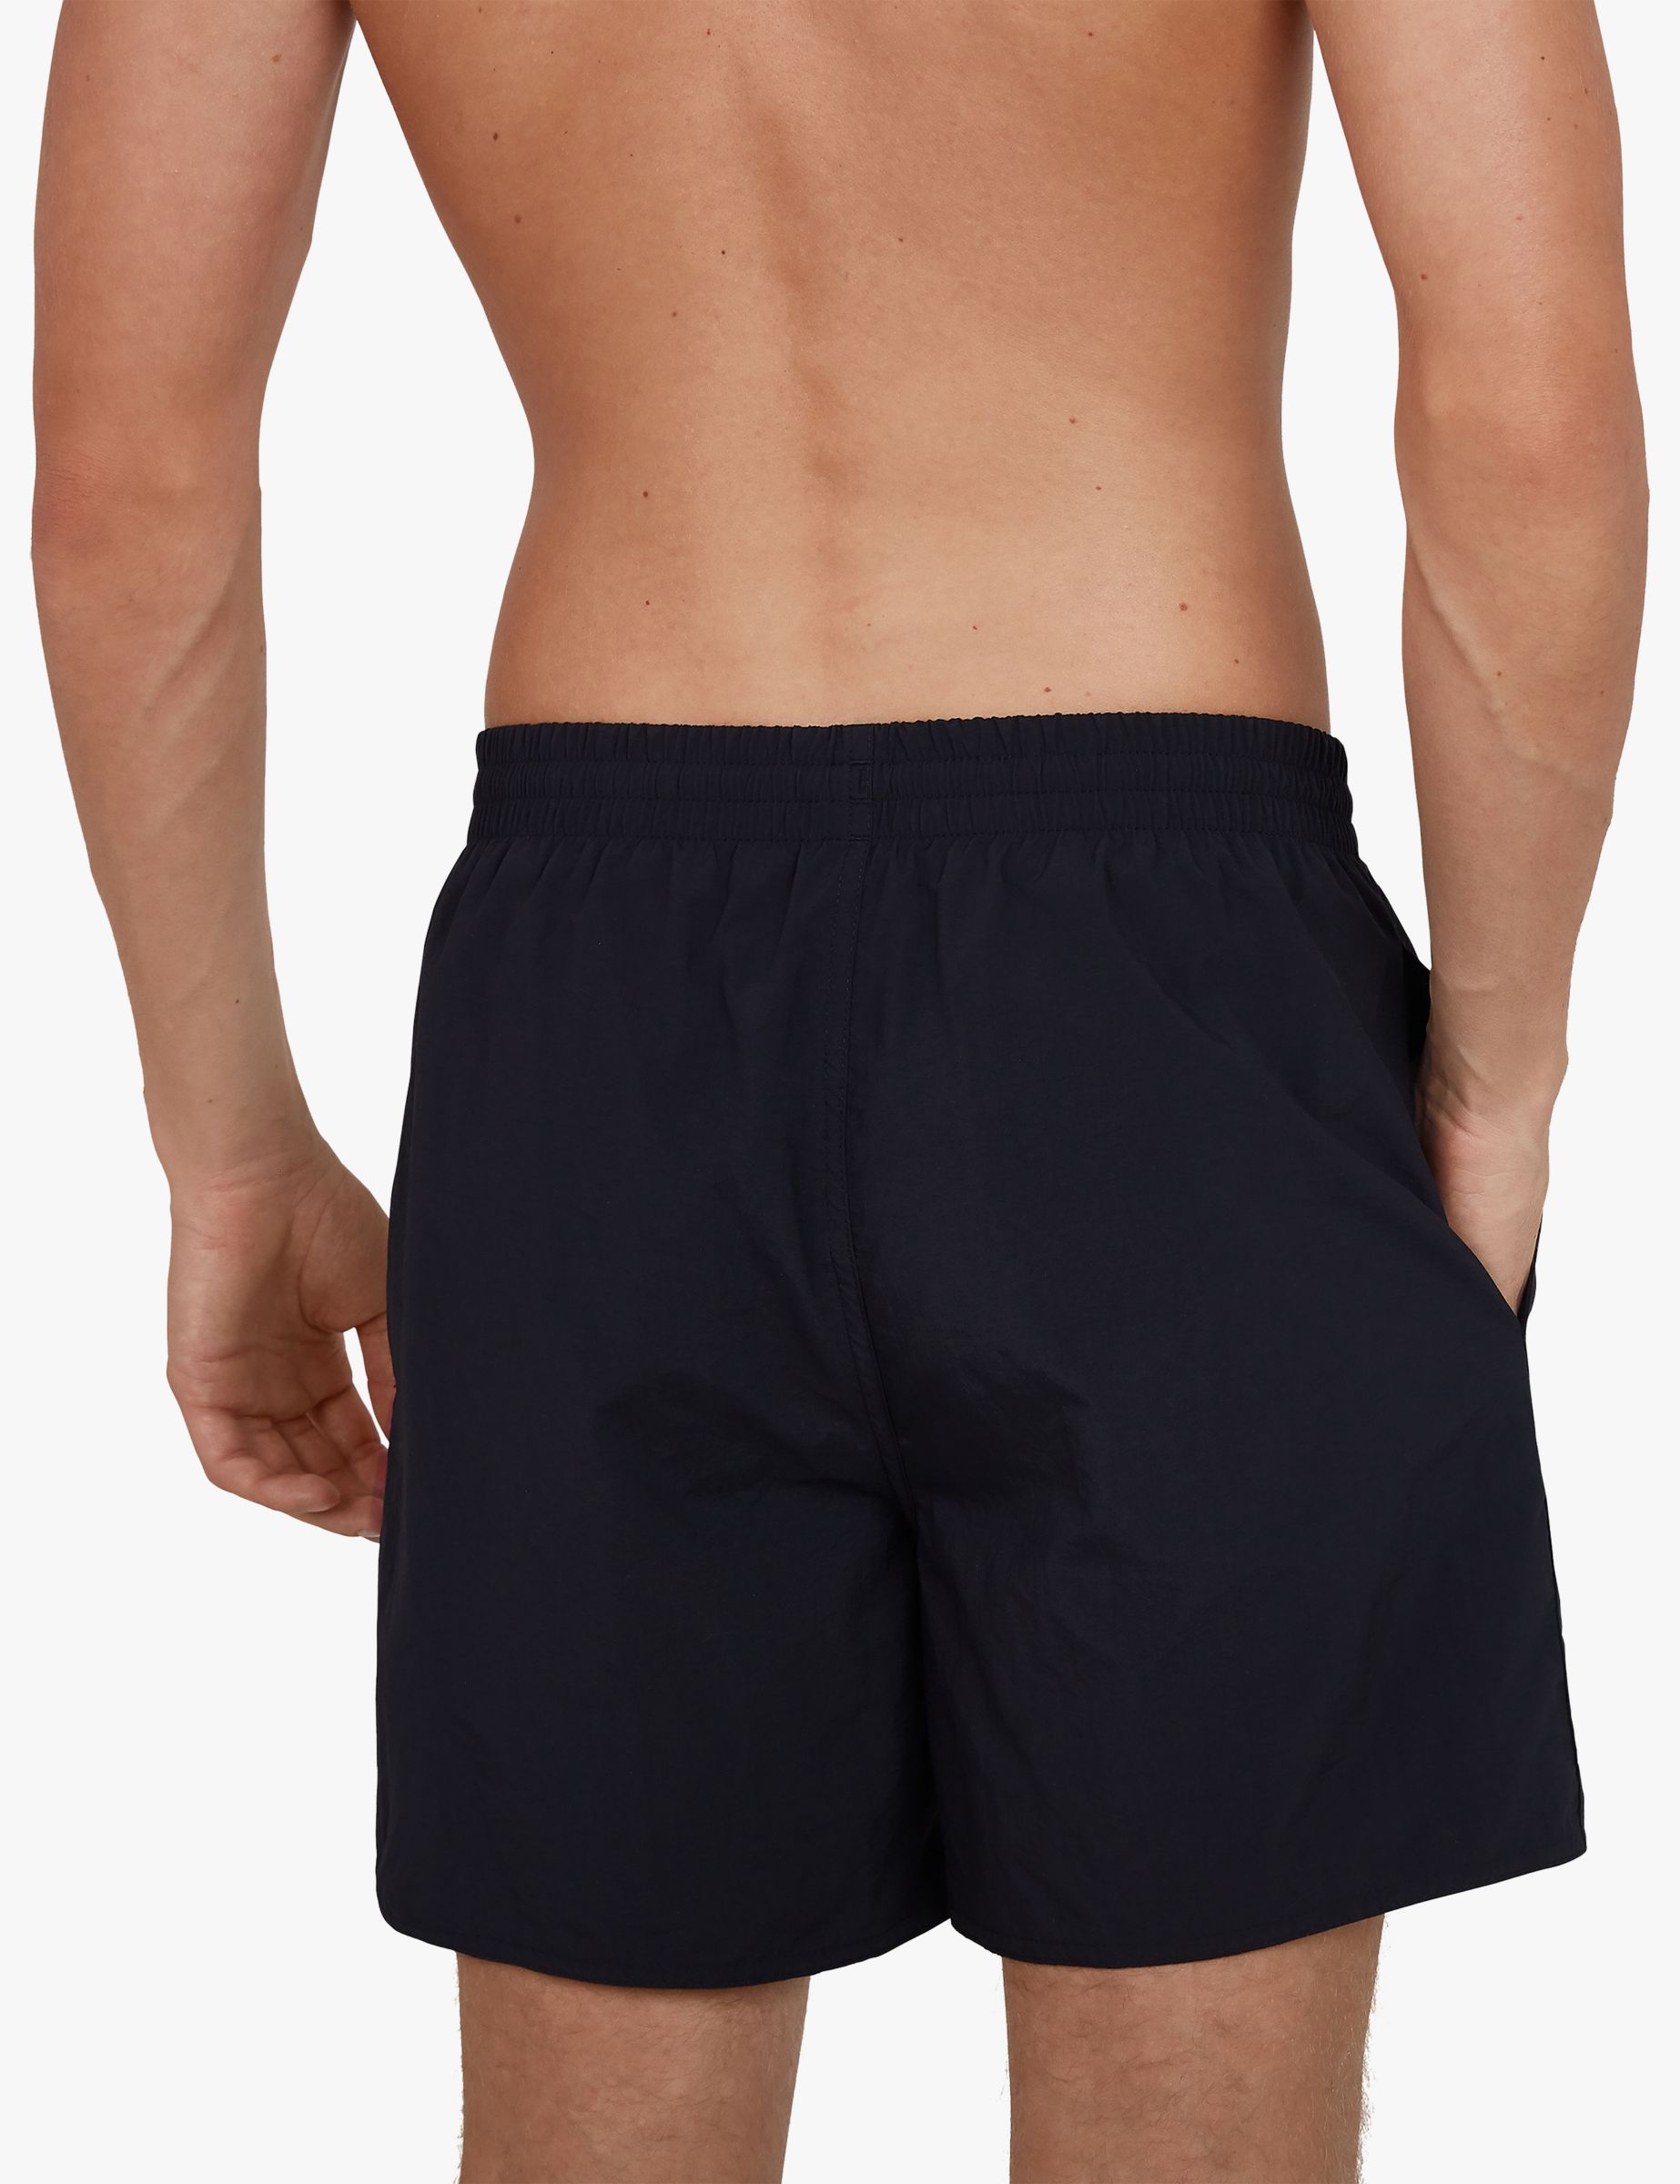 Speedo Essentials 16" Swim Shorts, Black, S